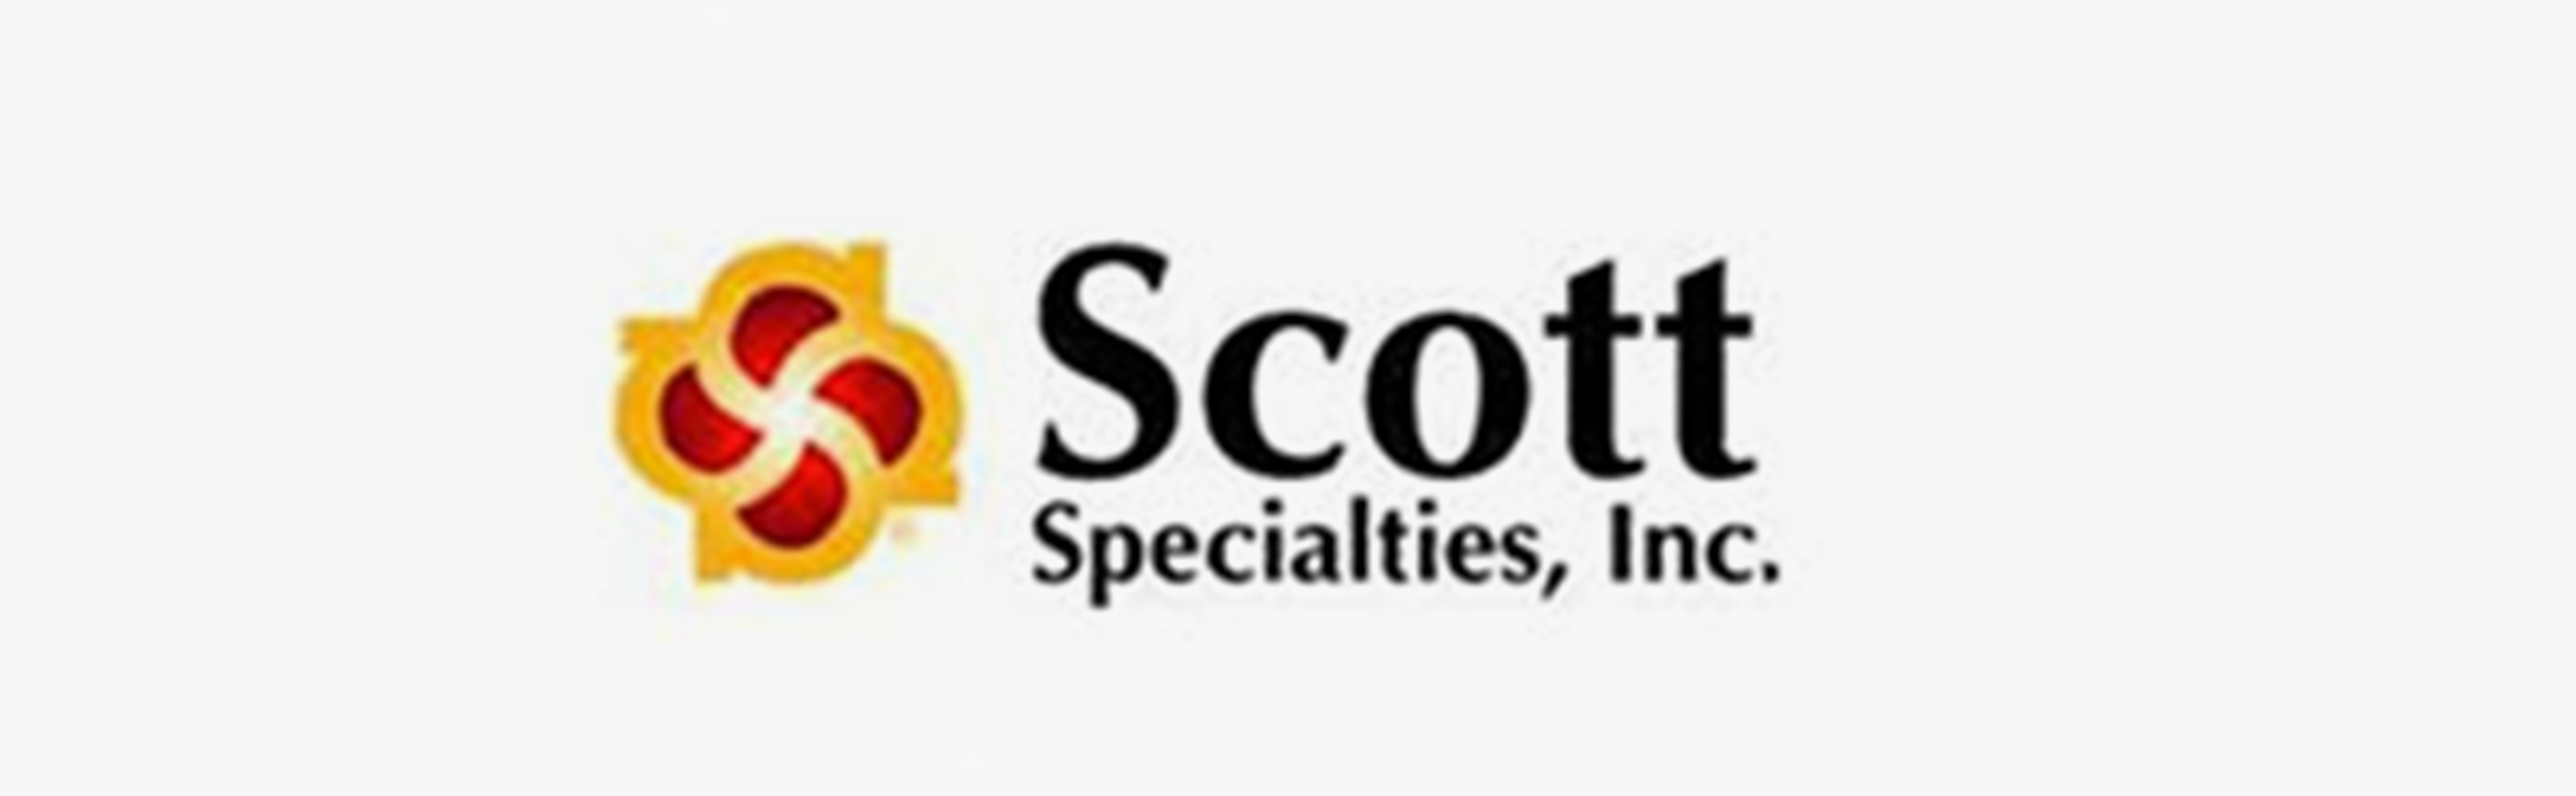 Scott Specialties, Inc.